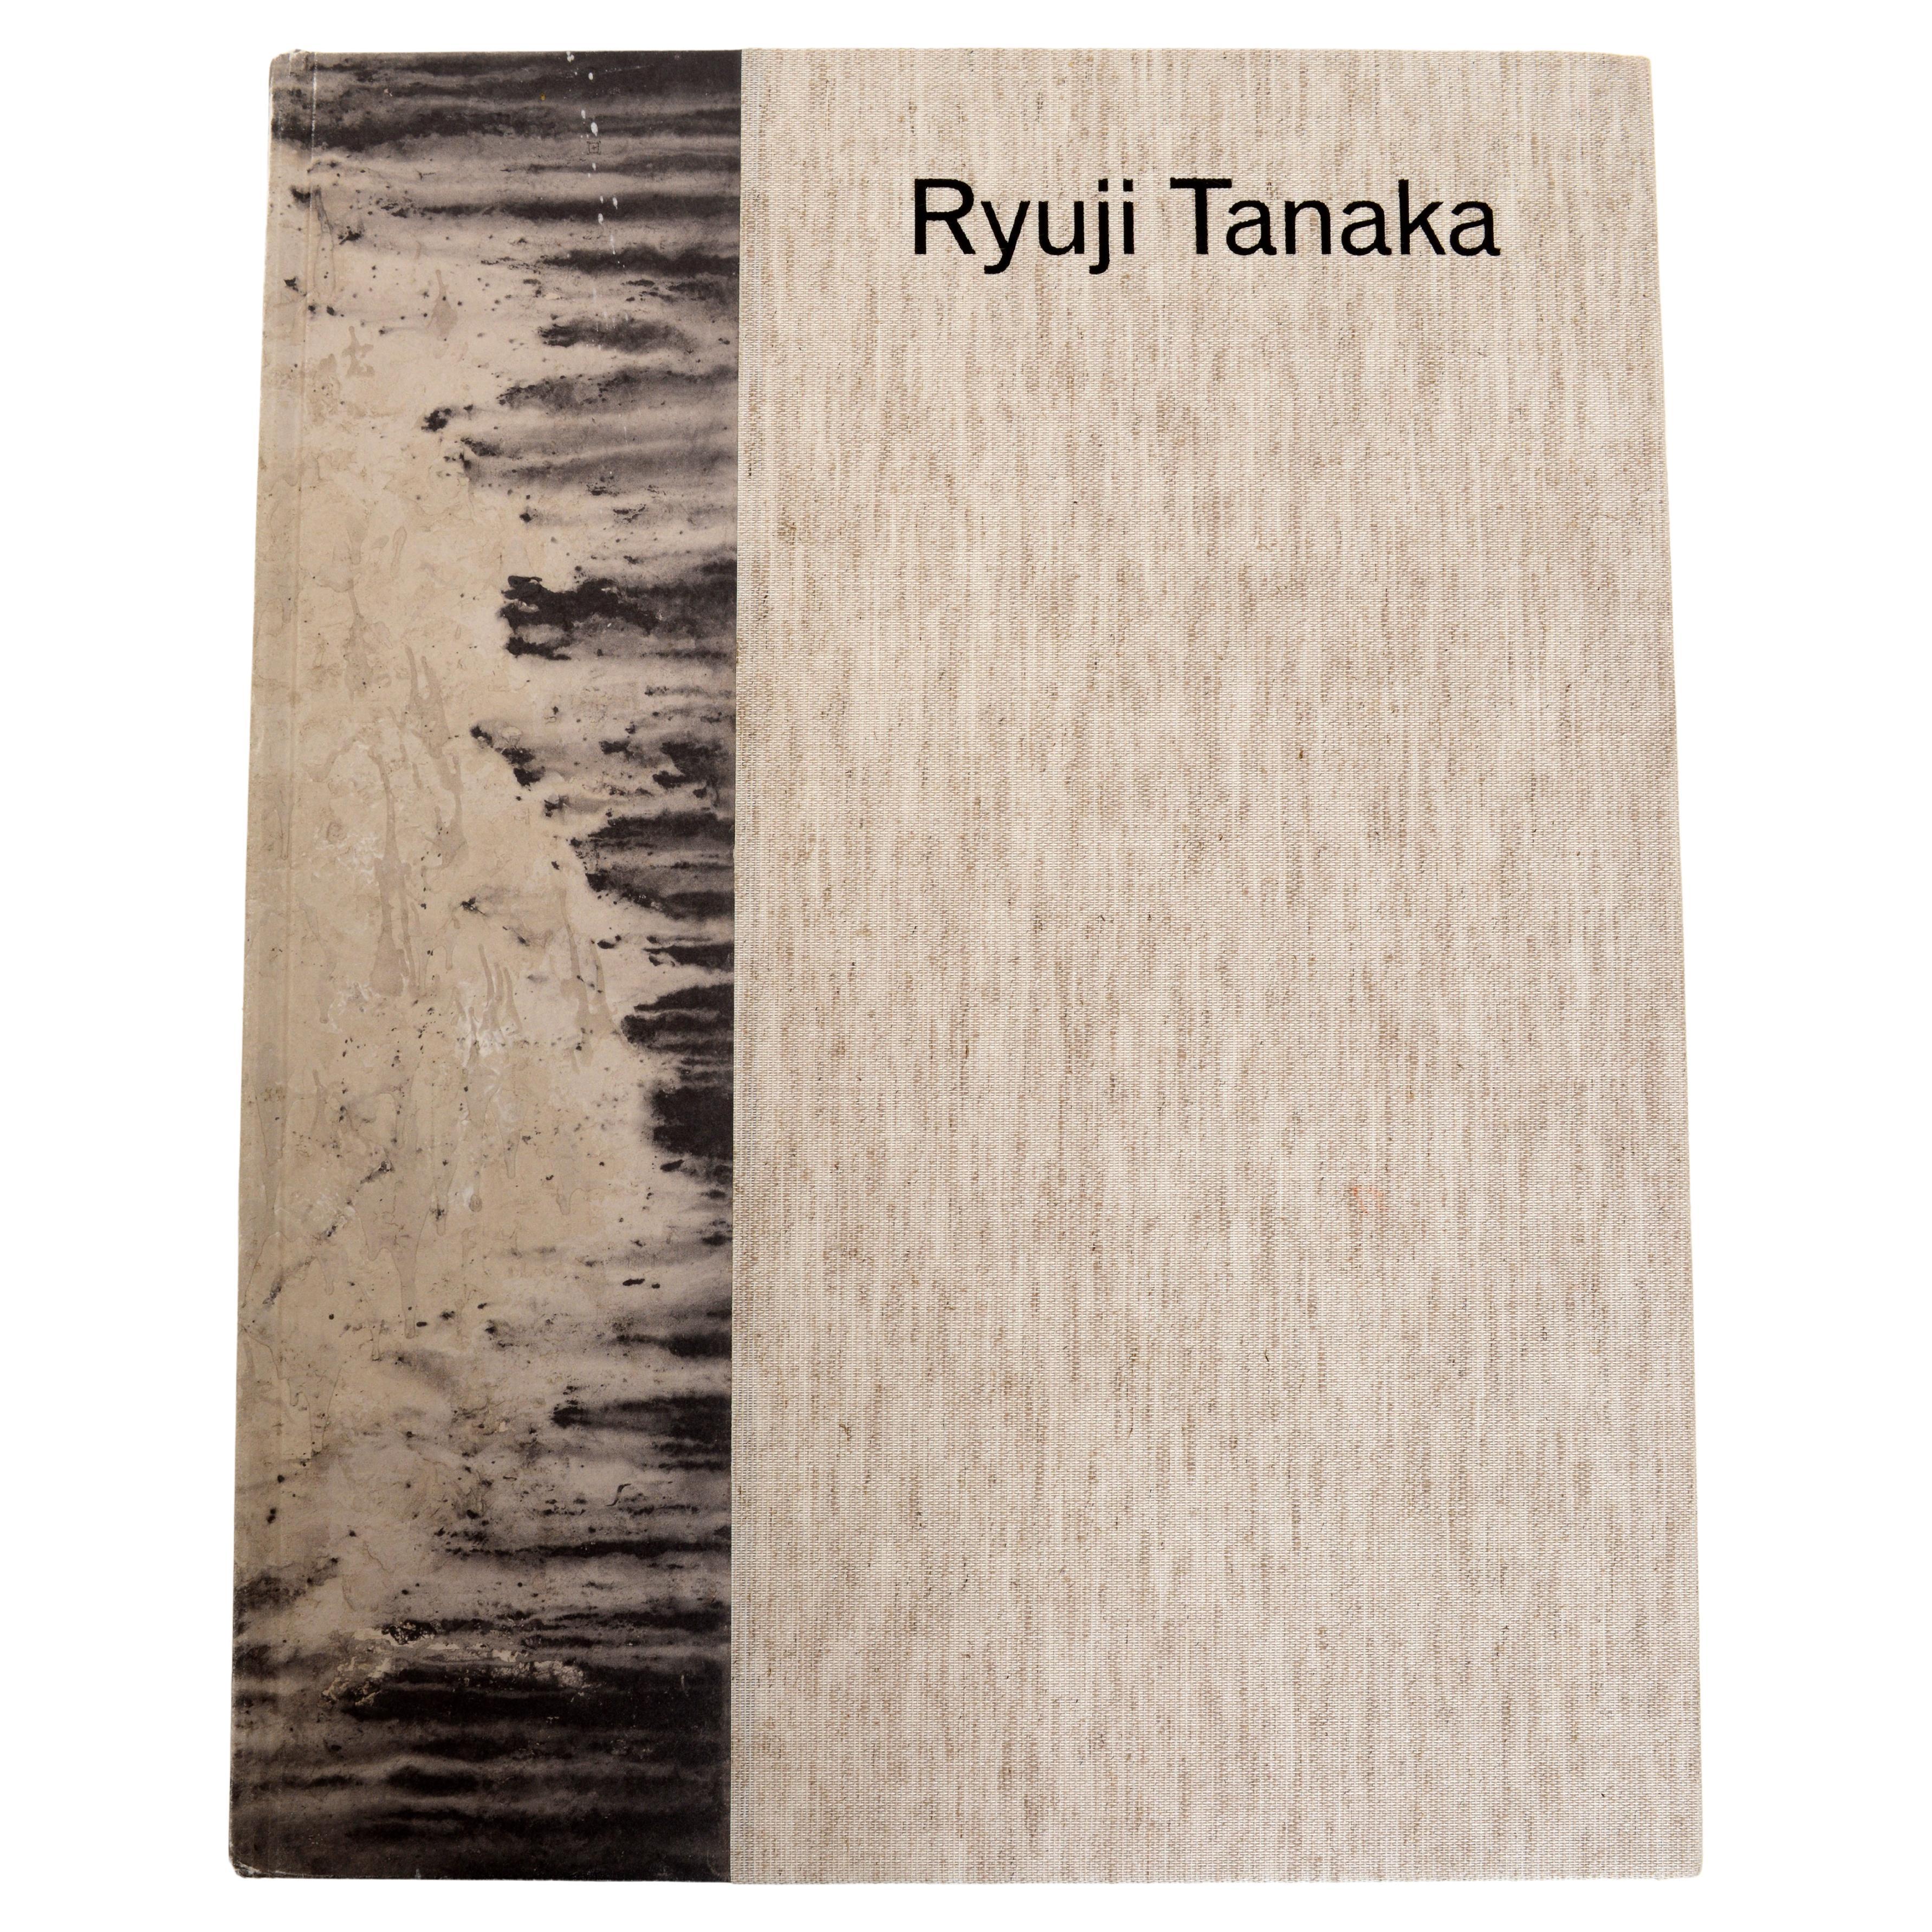 Ryuji Tanaka by Alexandre Carel, 1st Ed Exhibition Catalog